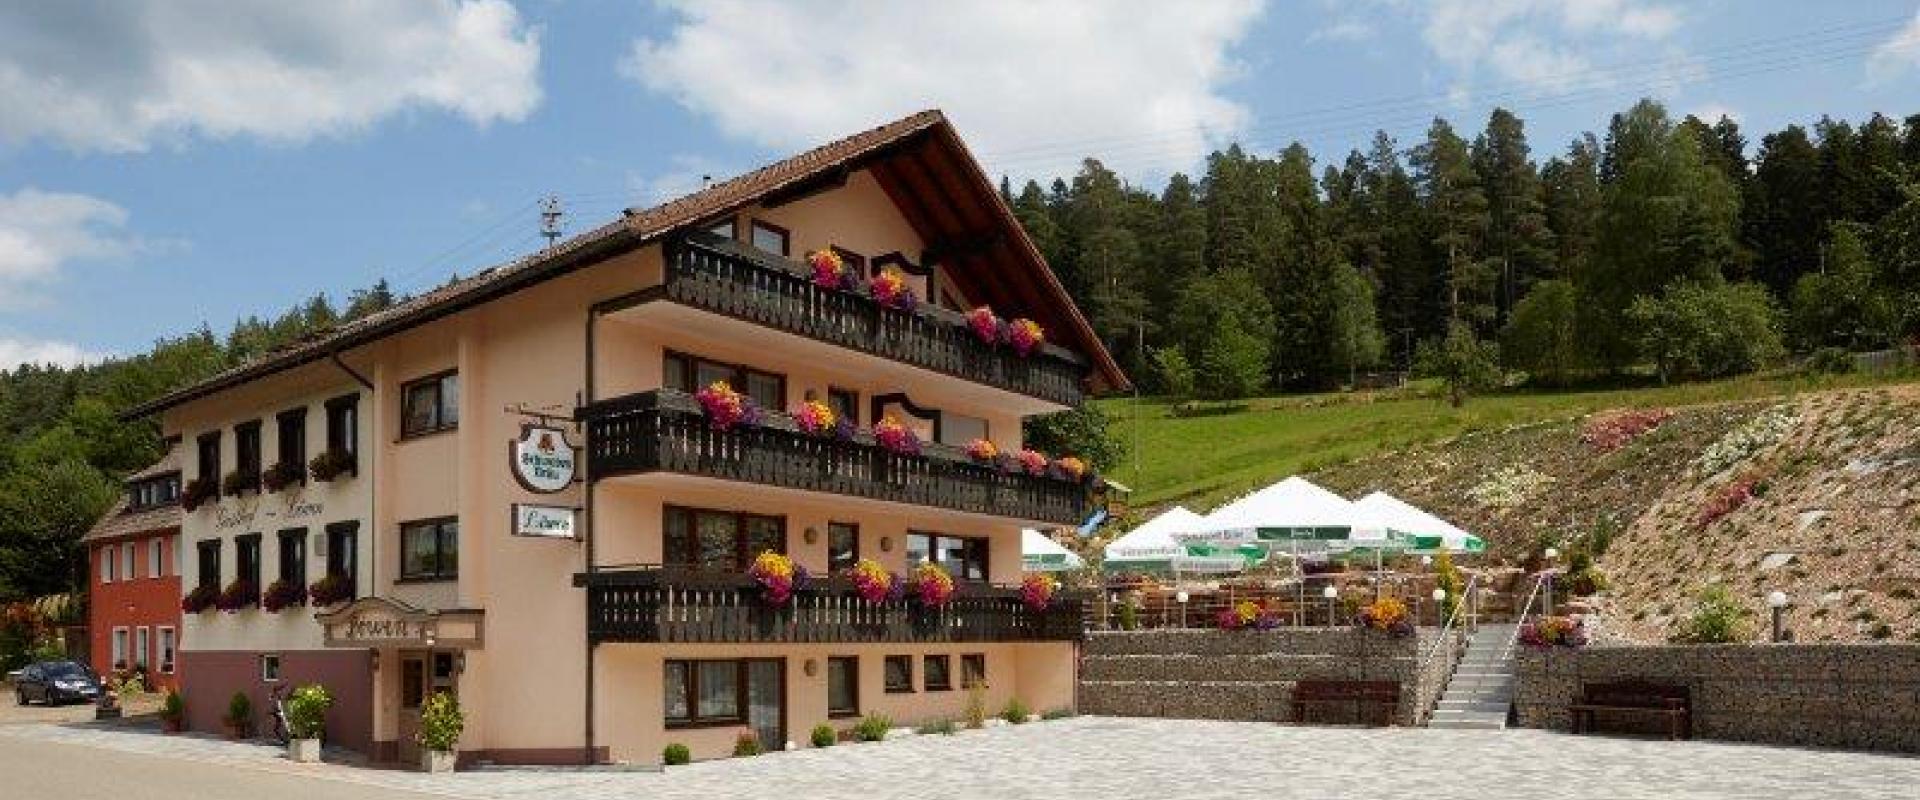 14294 Motorrad Hotel Löwen im Schwarzwald.jpg